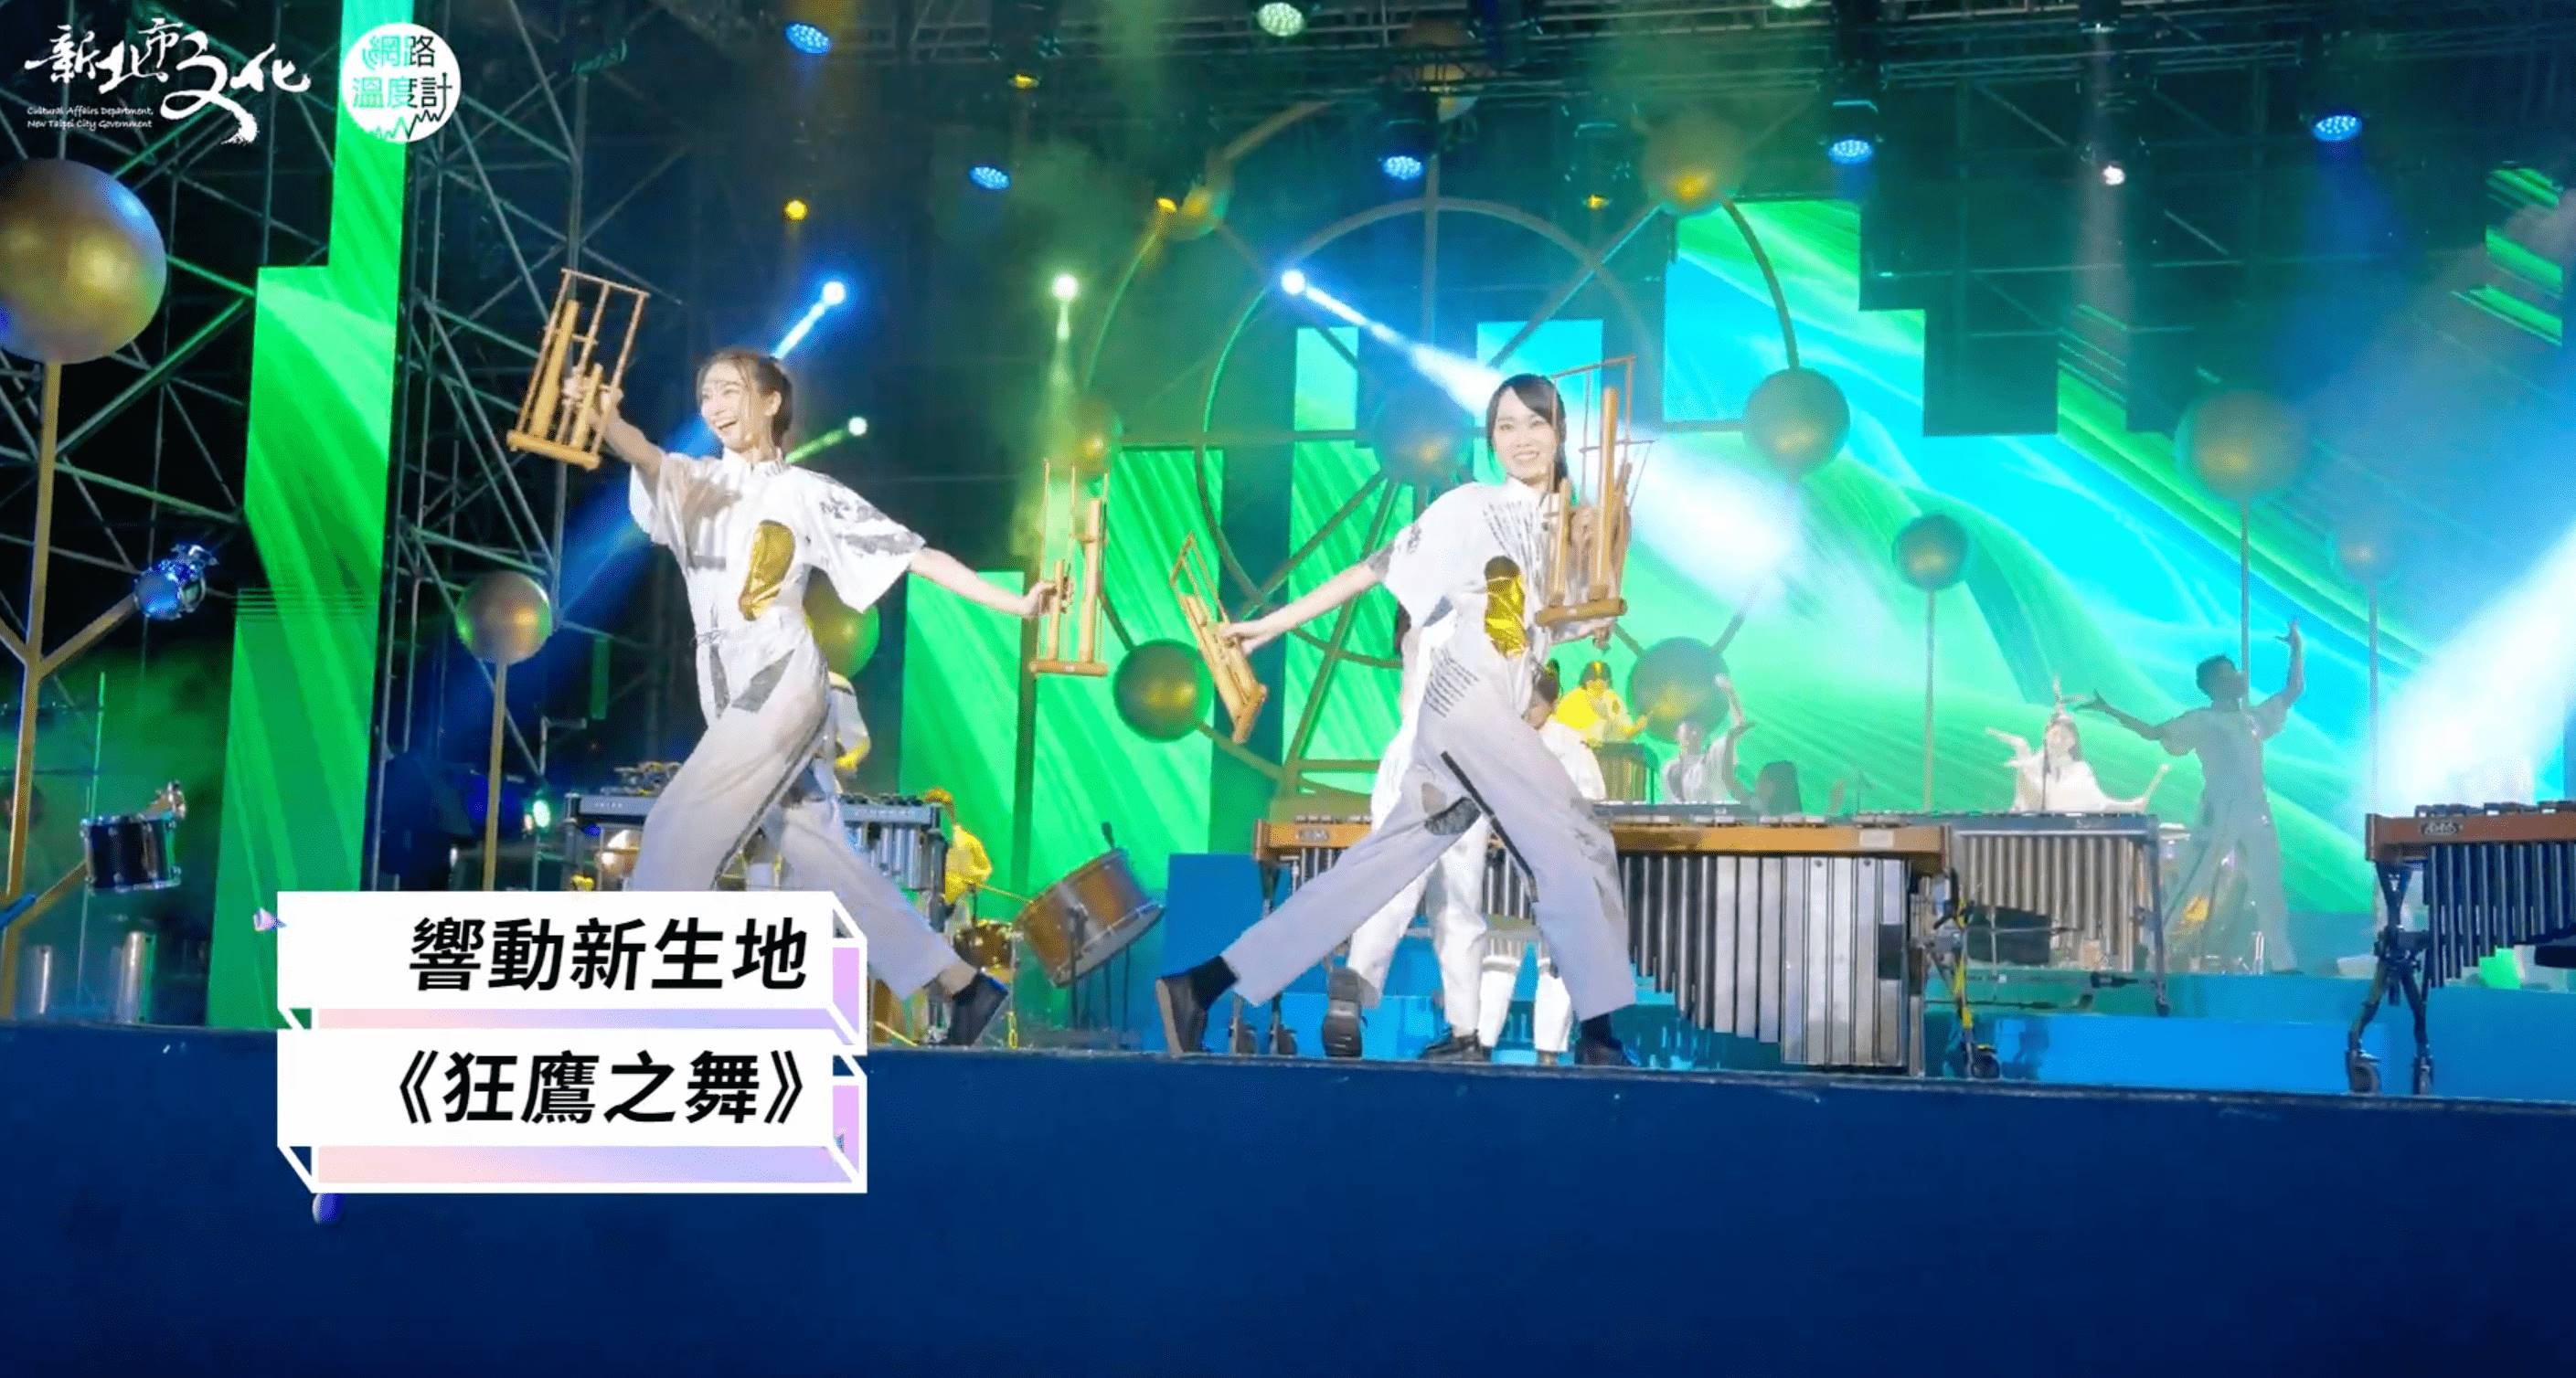 新北市城市藝術節朱宗慶打擊樂團與安娜琪舞蹈團表演。